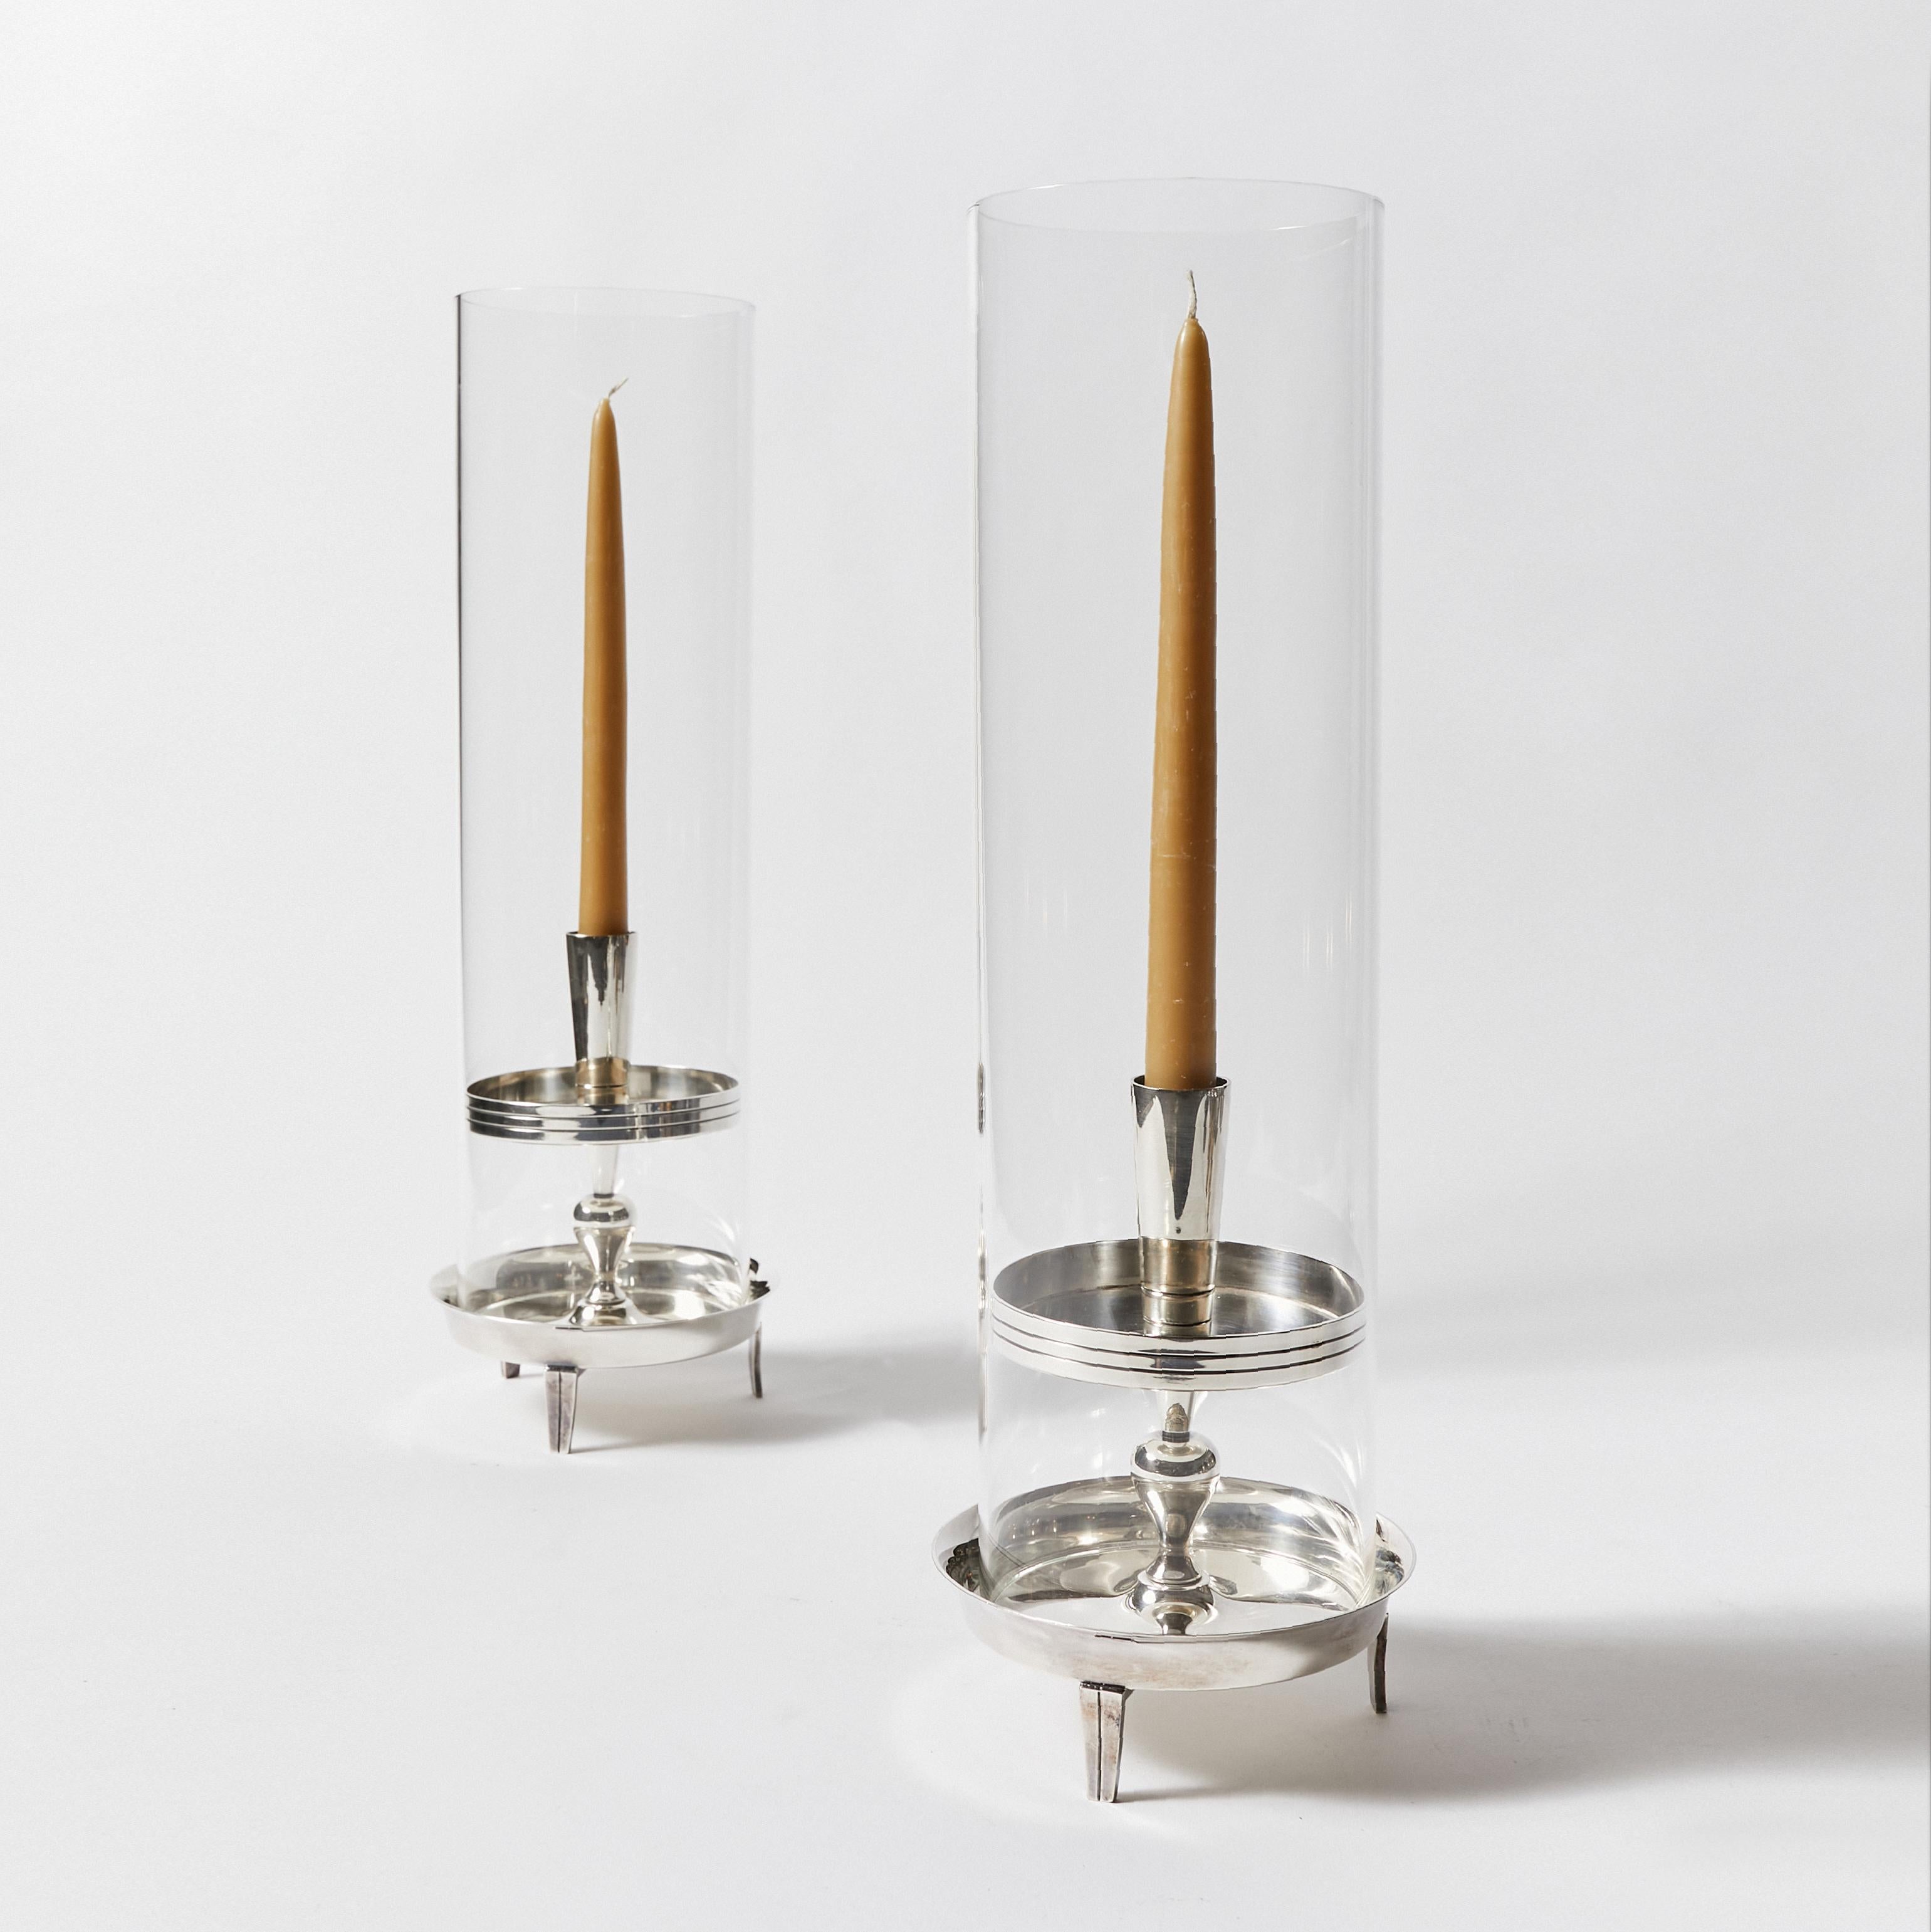 Ensemble de trois chandeliers stylisés en forme de gradins en métal argenté. Conçu par Tommi Parzinger pour Heirloom.